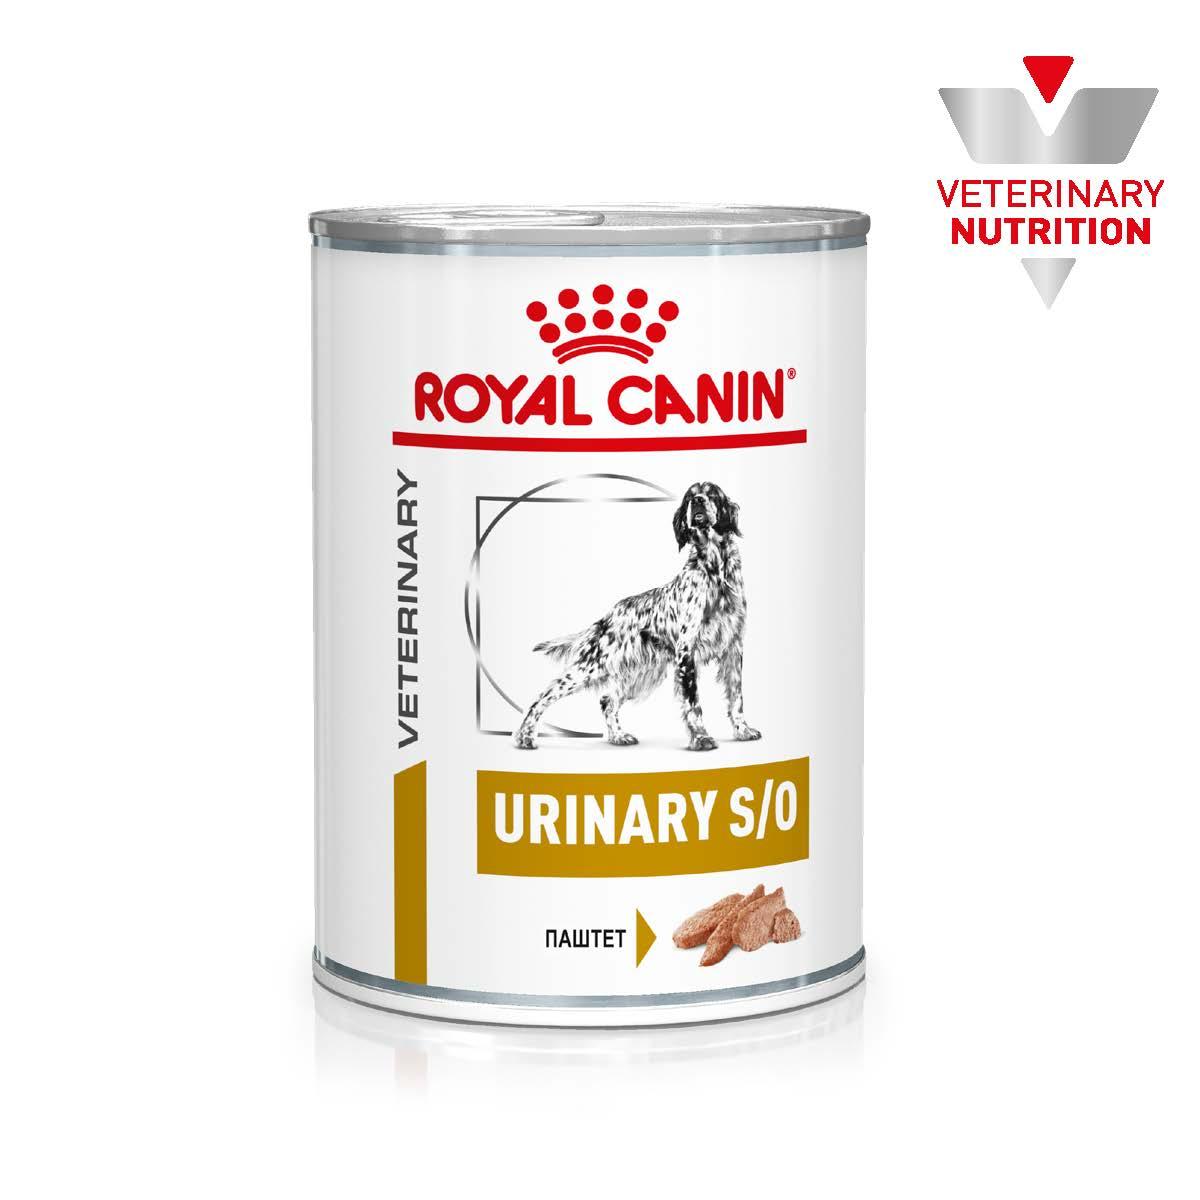 Royal Canin Urinary S/O вологий лікувальний корм для собак при сечокам'яній хворобі, 410ГР, фото 1